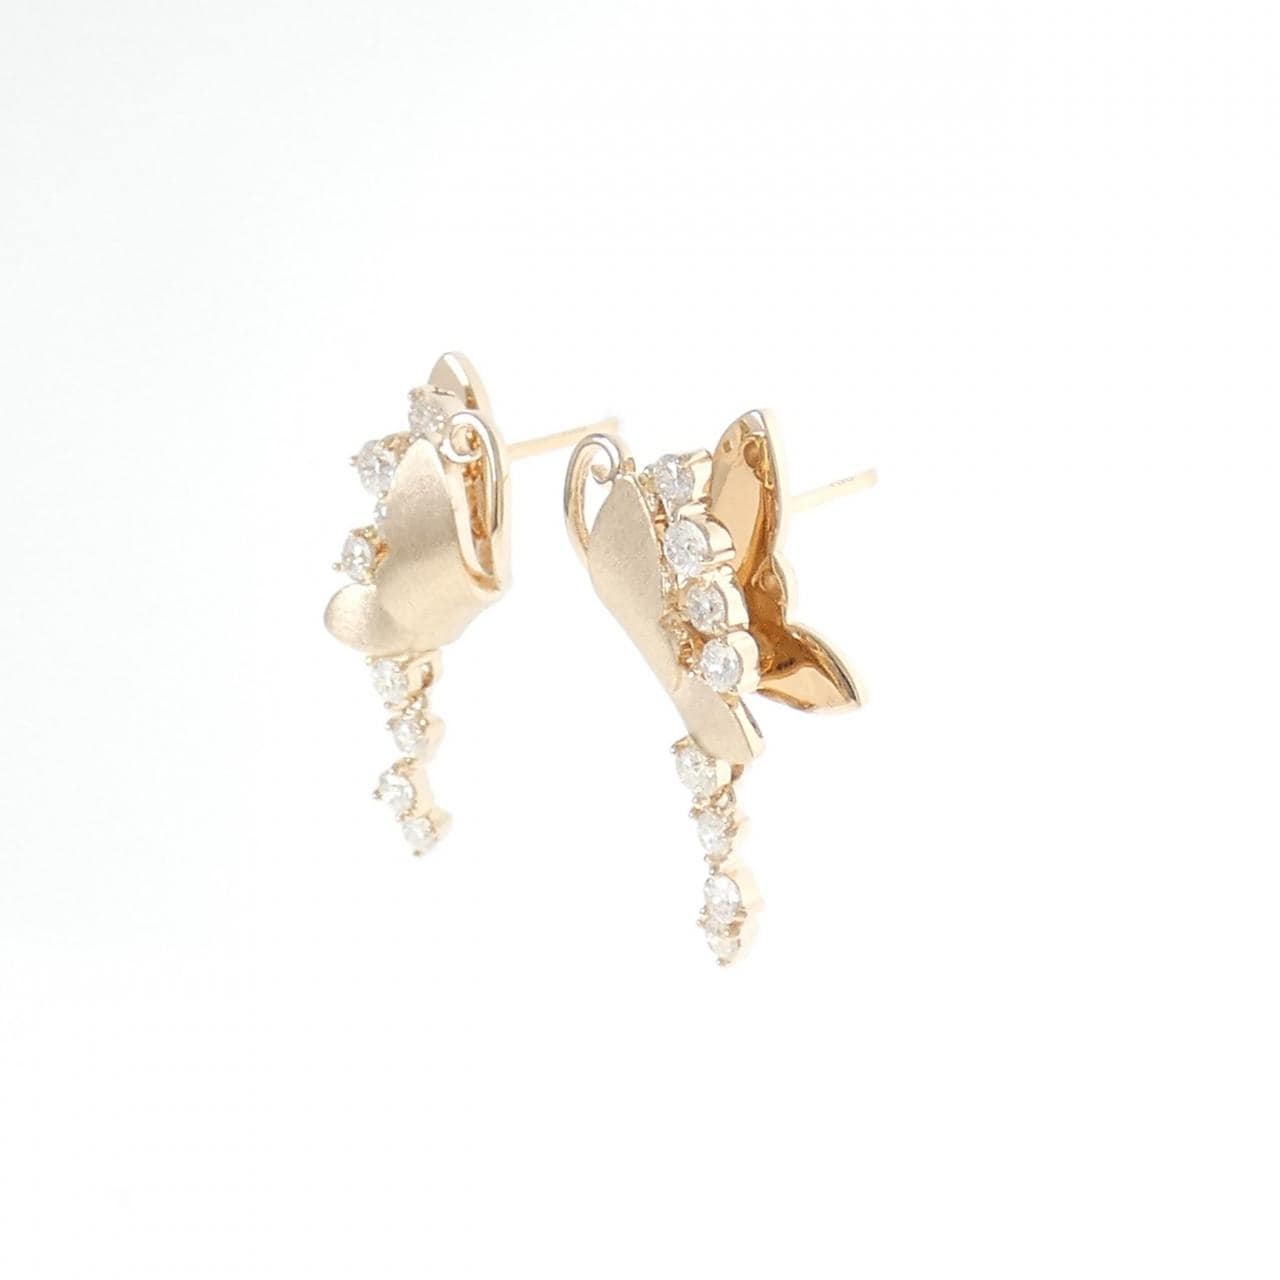 K18PG Diamond earrings 0.56CT